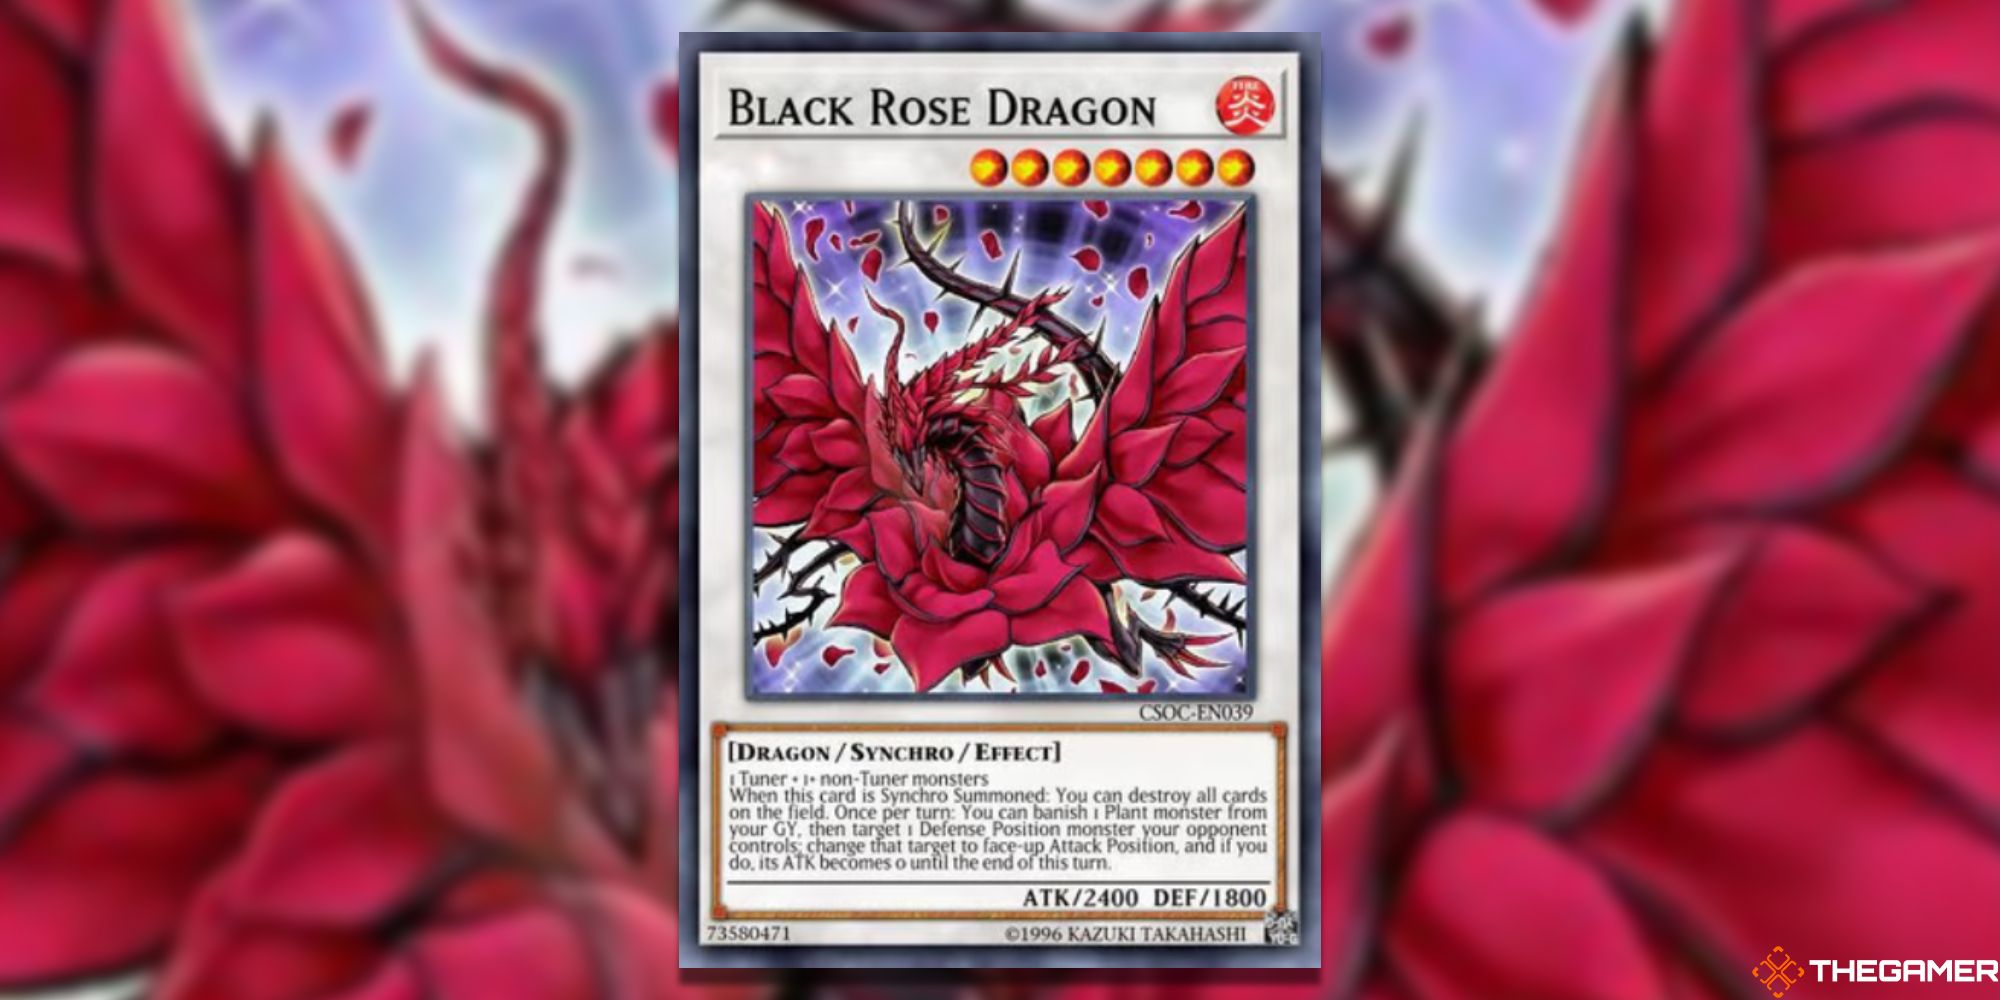 Yu-Gi-Oh! Black Rose Dragon on blurred background